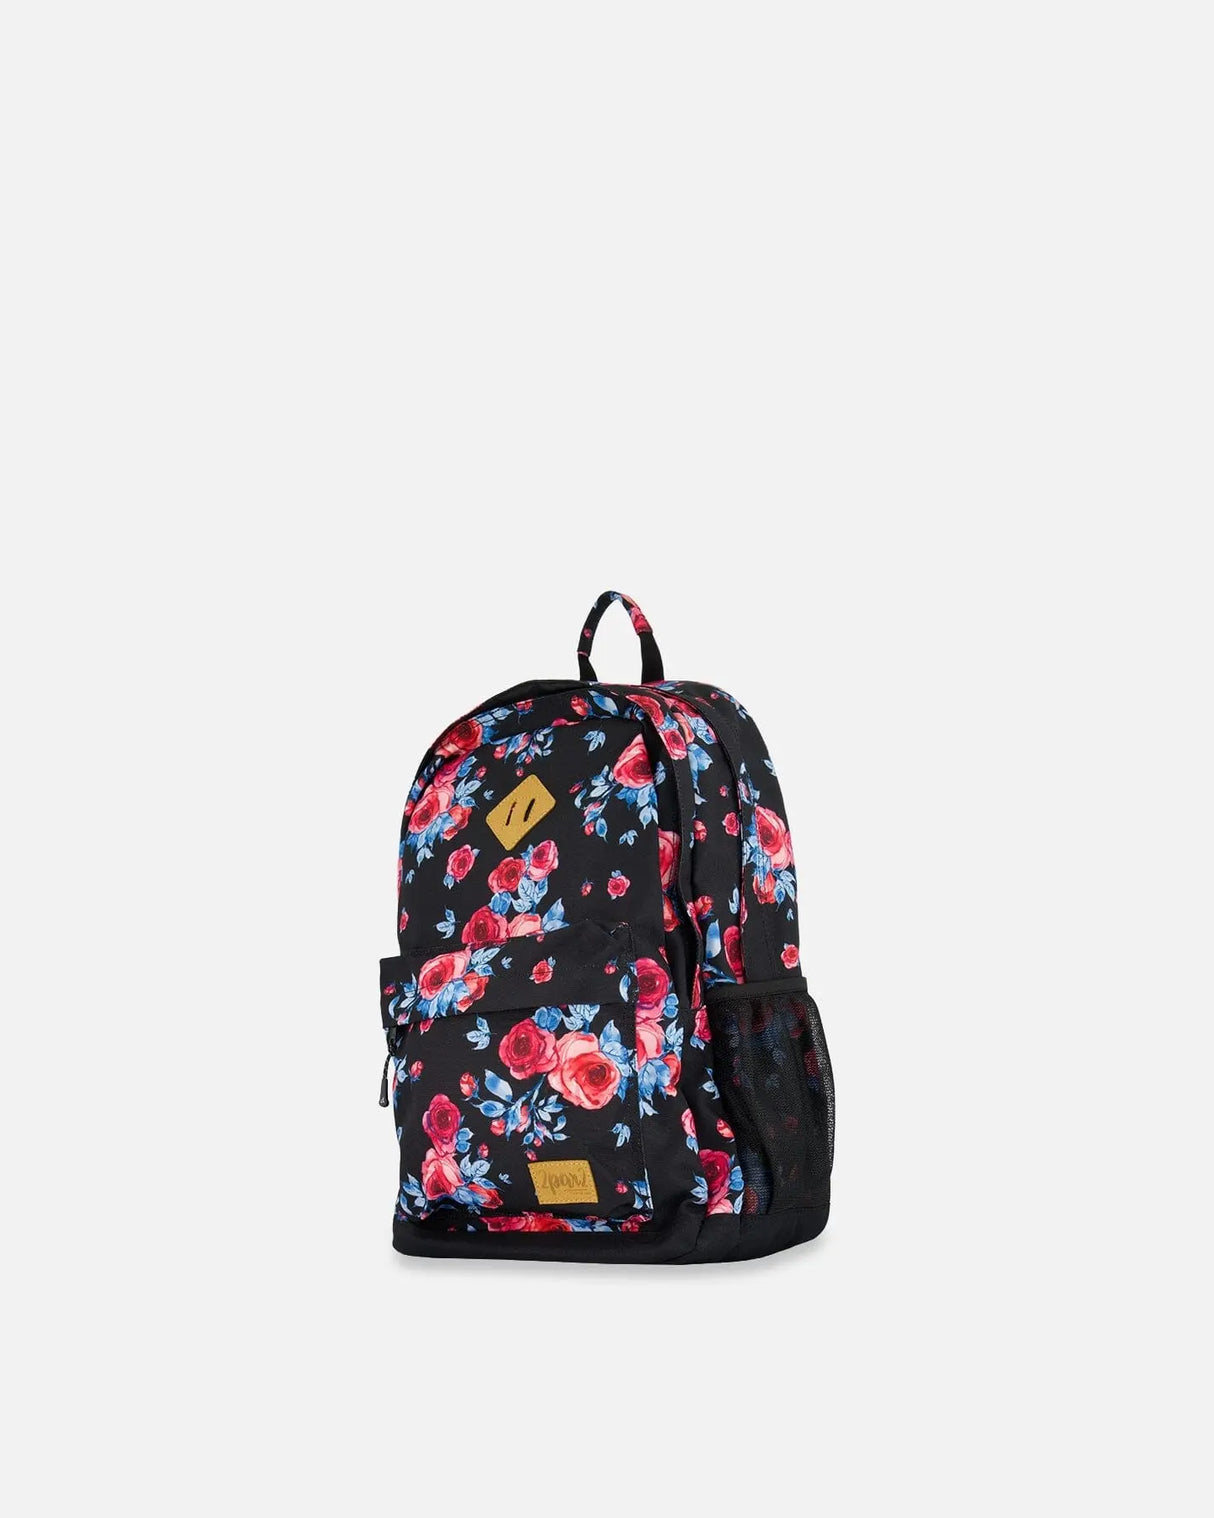 Backpack Black Printed Roses | Deux par Deux | Jenni Kidz